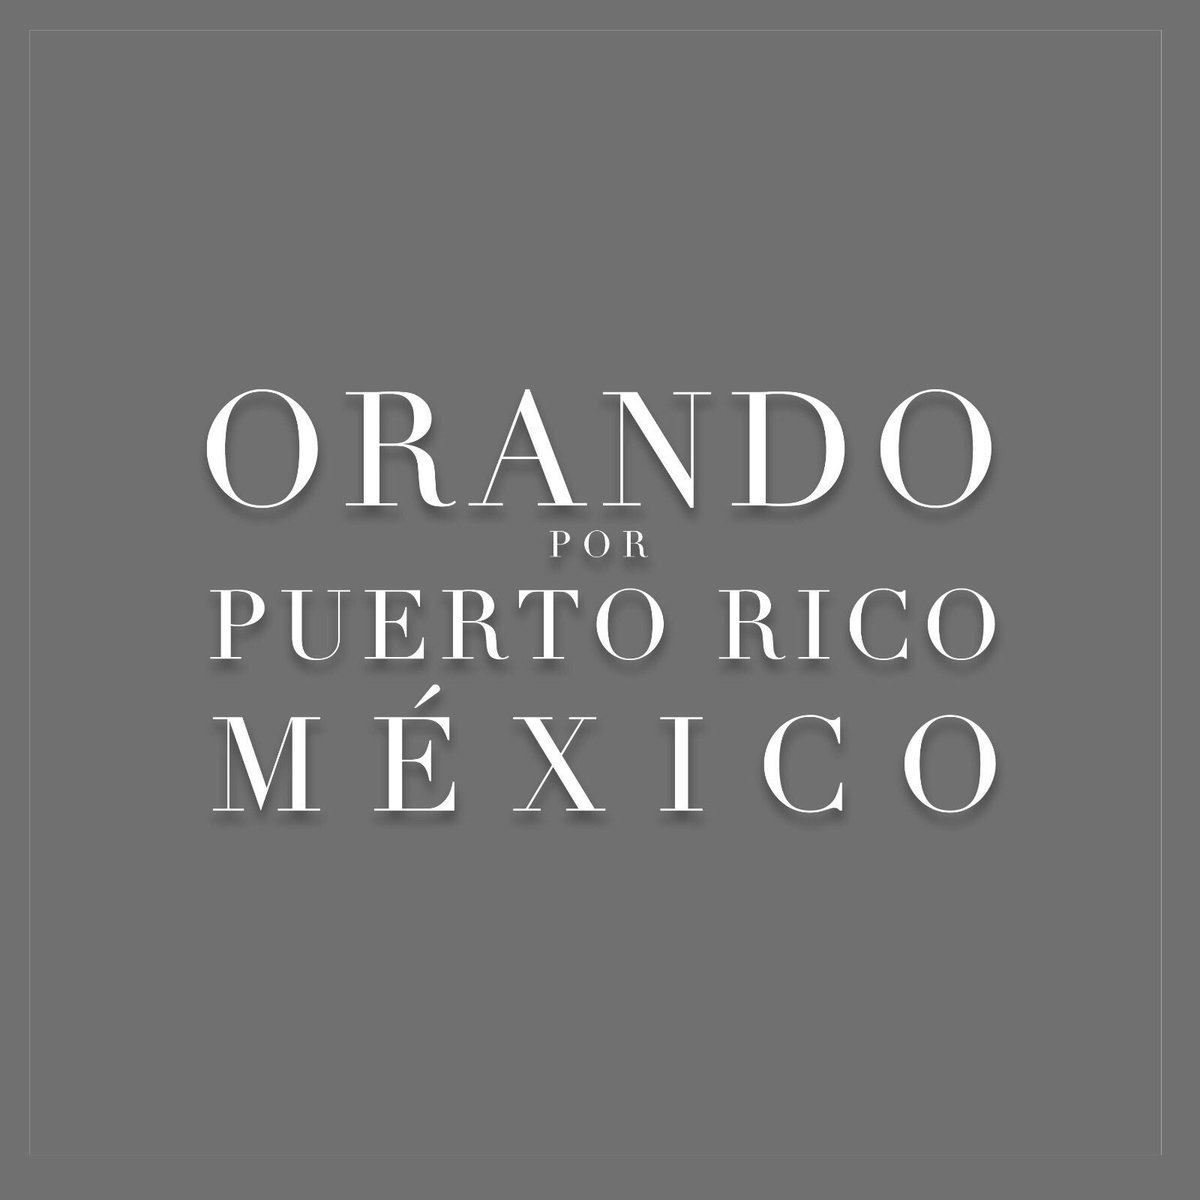 El poder de la oración es inmenso, seguimos orando por Puerto Rico y México. Estamos con ustedes... @MarcAnthony